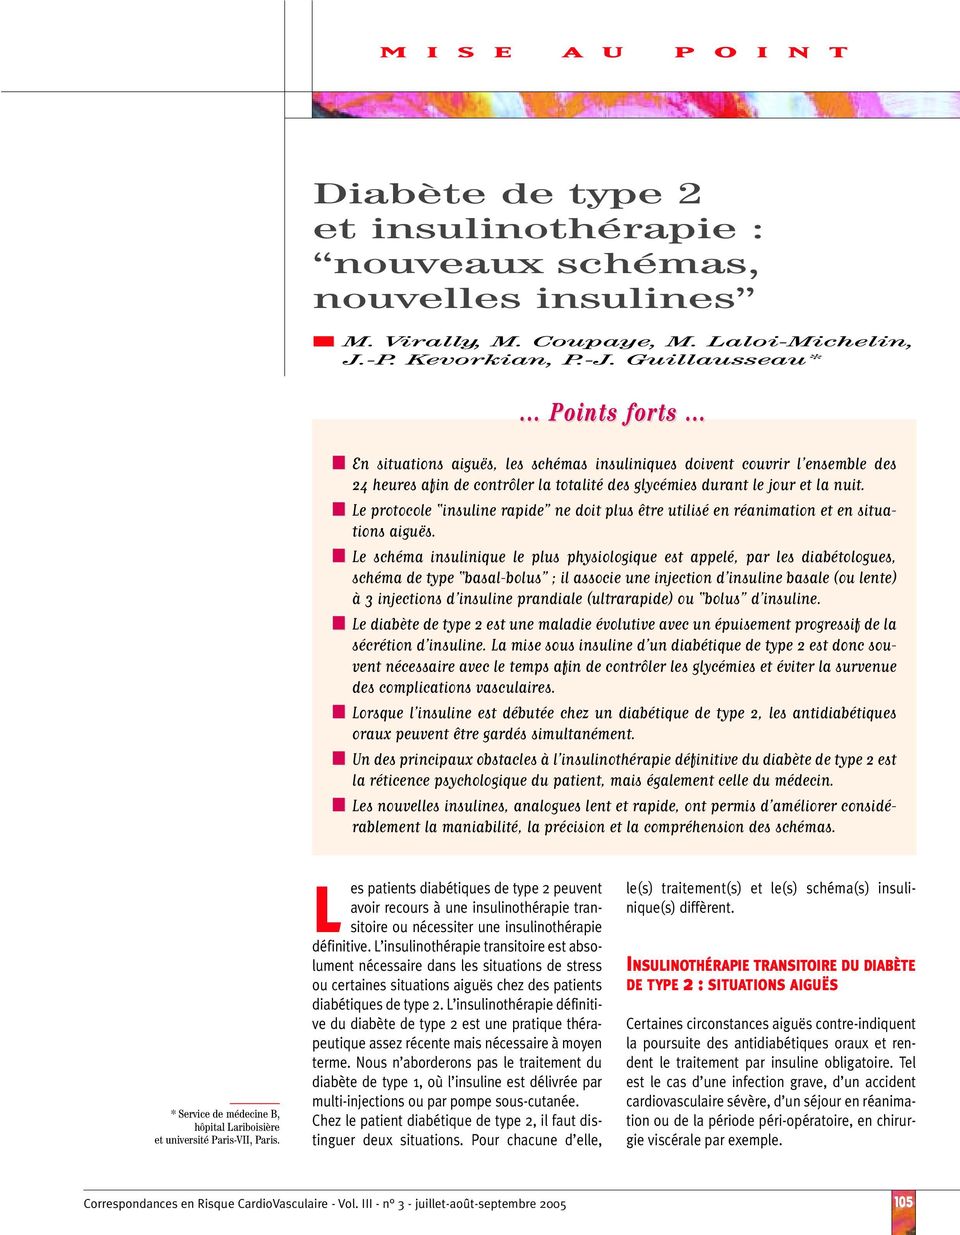 Le protocole insuline rapide ne doit plus être utilisé en réanimation et en situations aiguës.